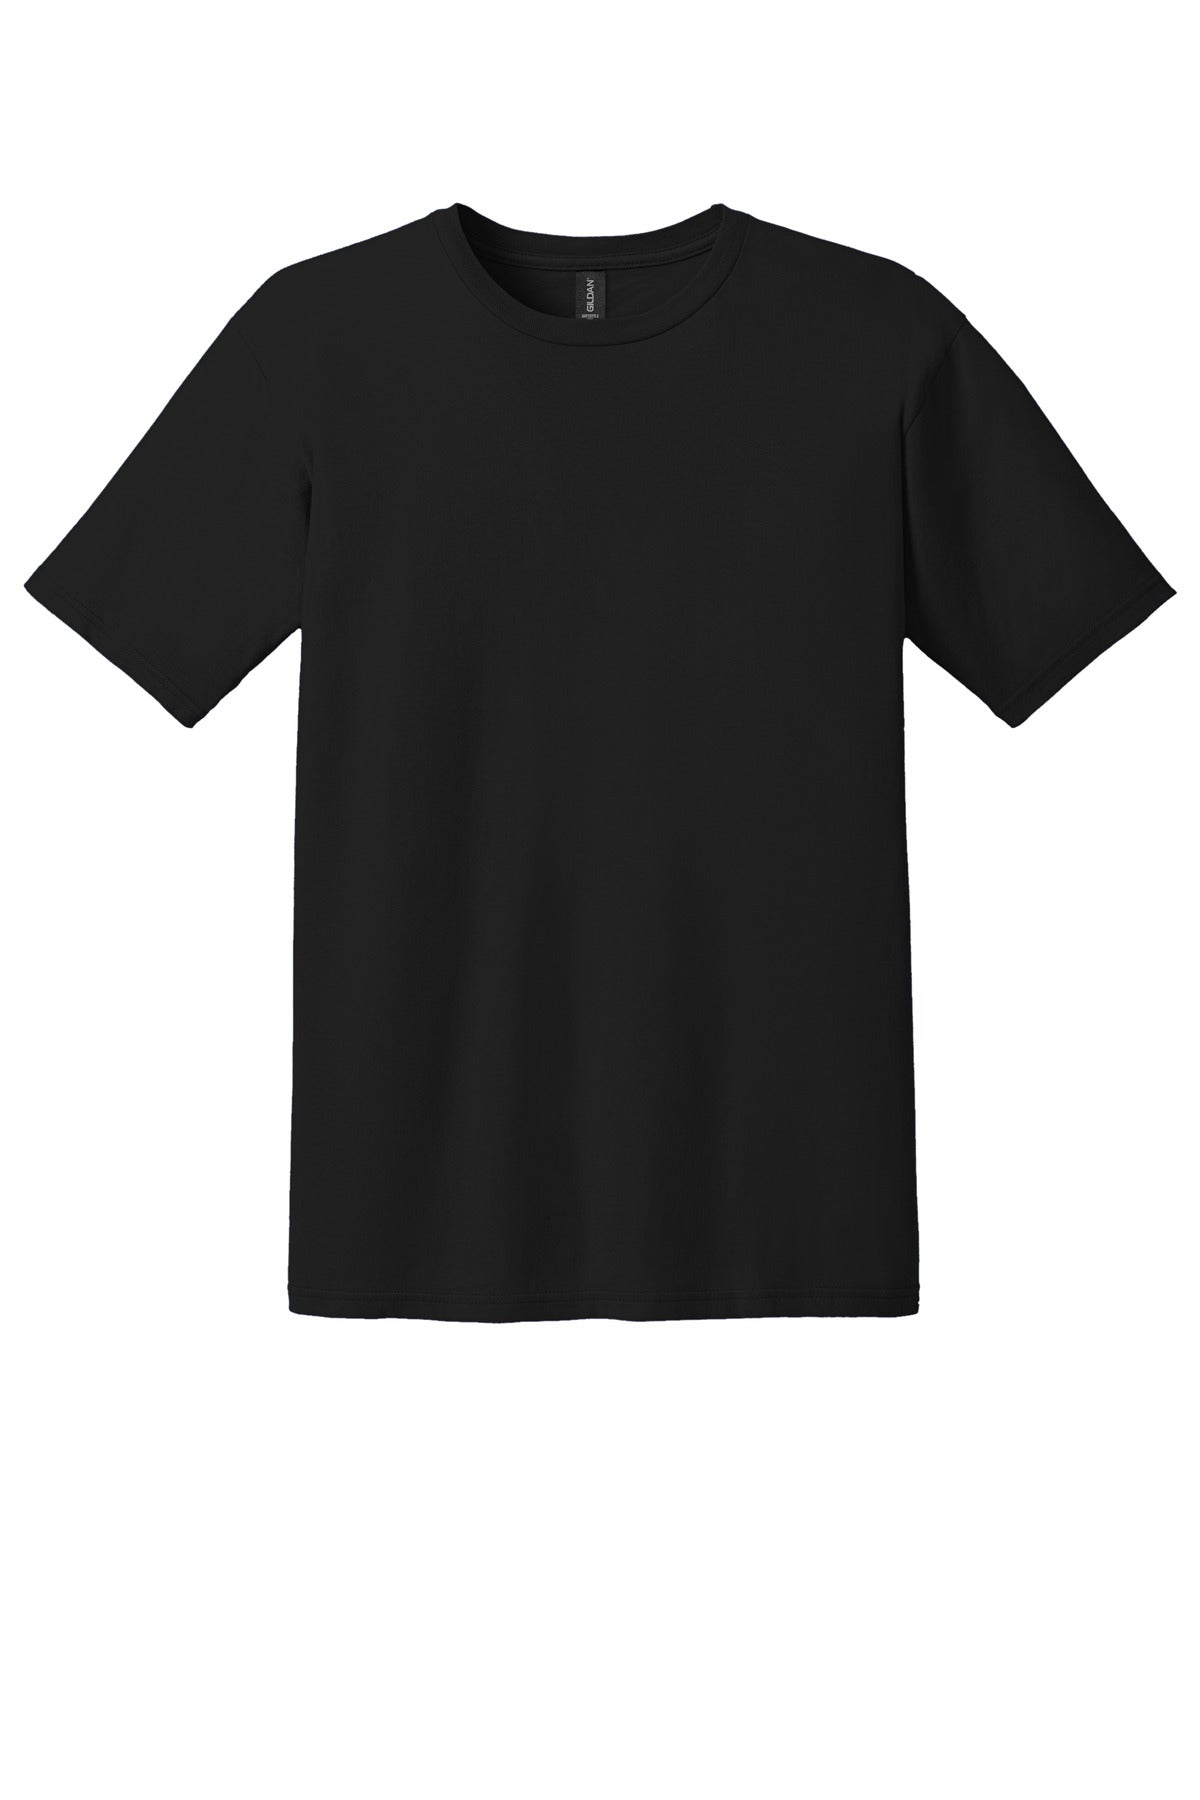 Gildan 100% Ring Spun Cotton T-Shirt. 980 - BT Imprintables Shirts